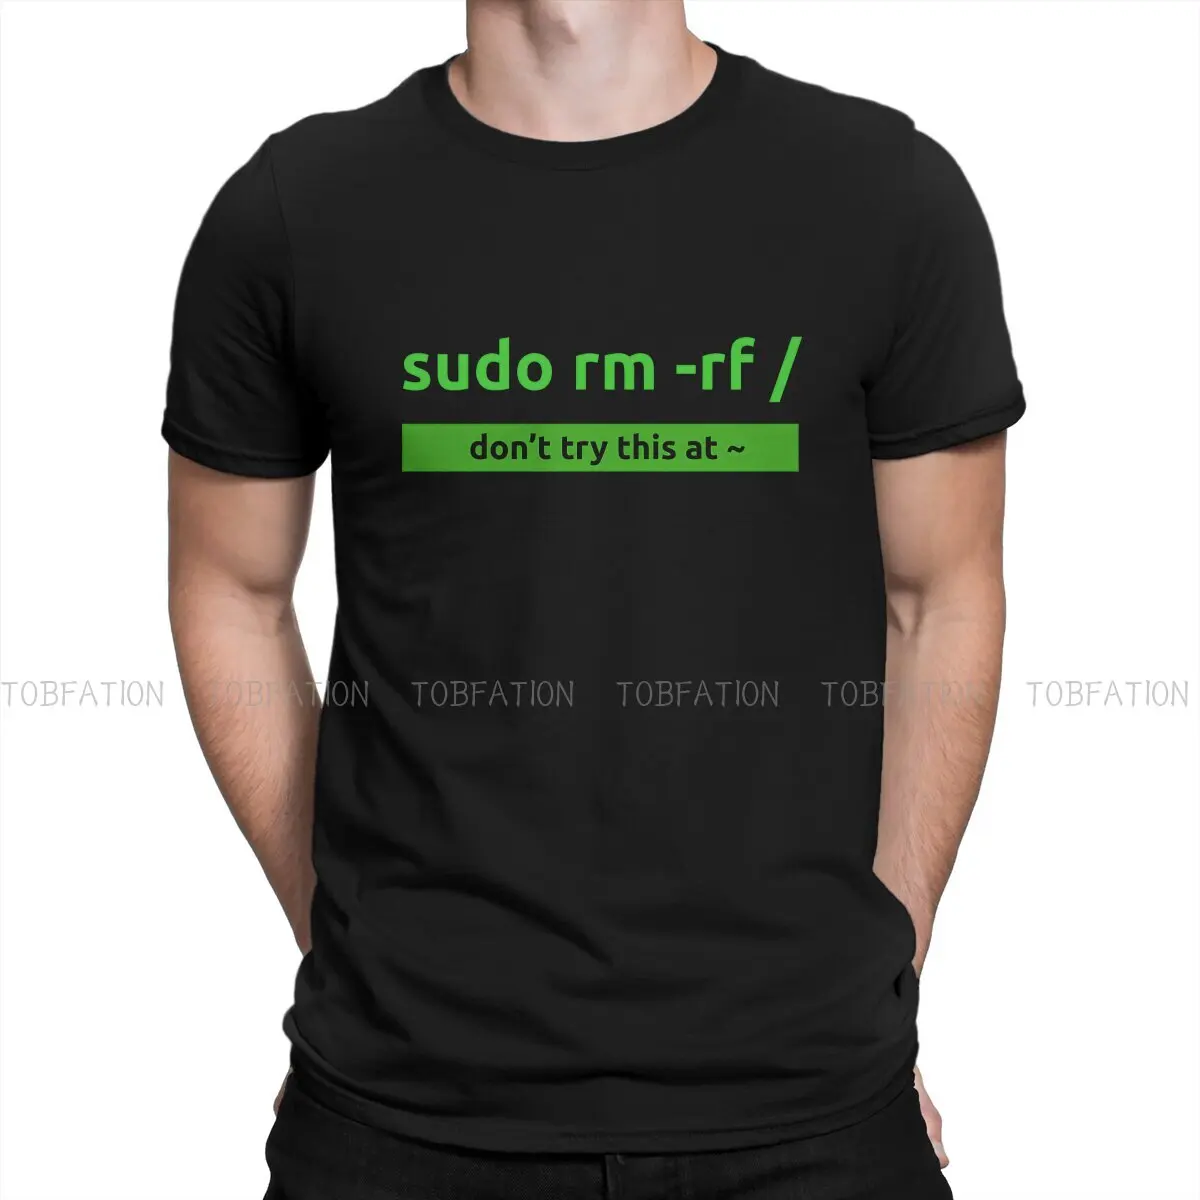 

Sudo Linux программируемая Мужская футболка Linux операционная система Crewneck 100% хлопок футболка Юмор высшее качество подарки на день рождения